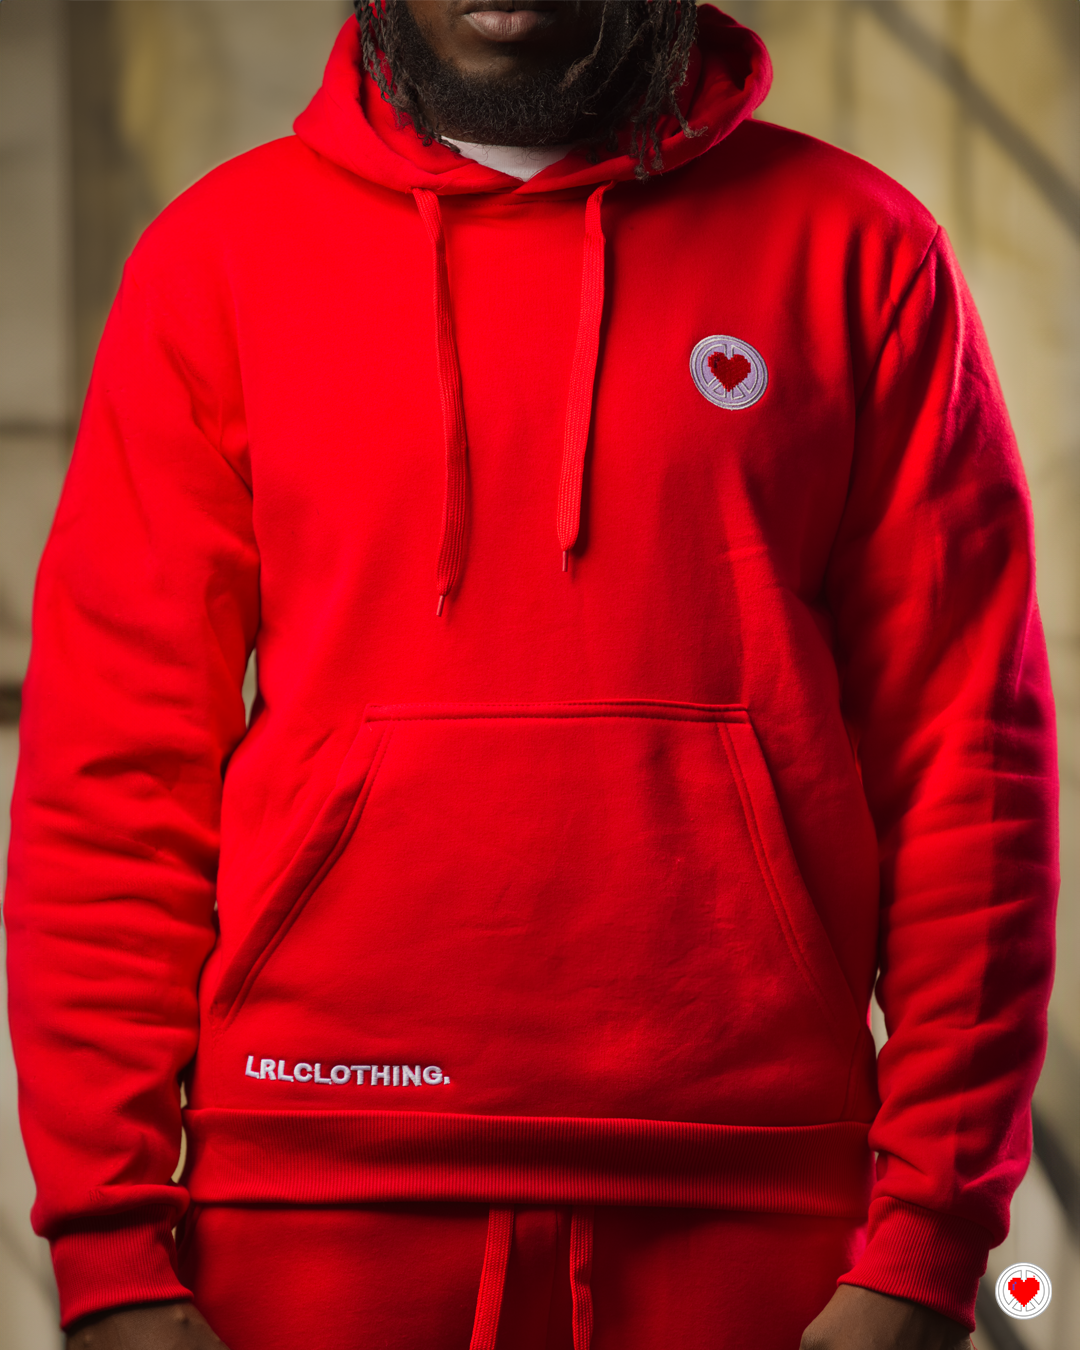 “Men’s Red Heart Logo Sweatsuit”